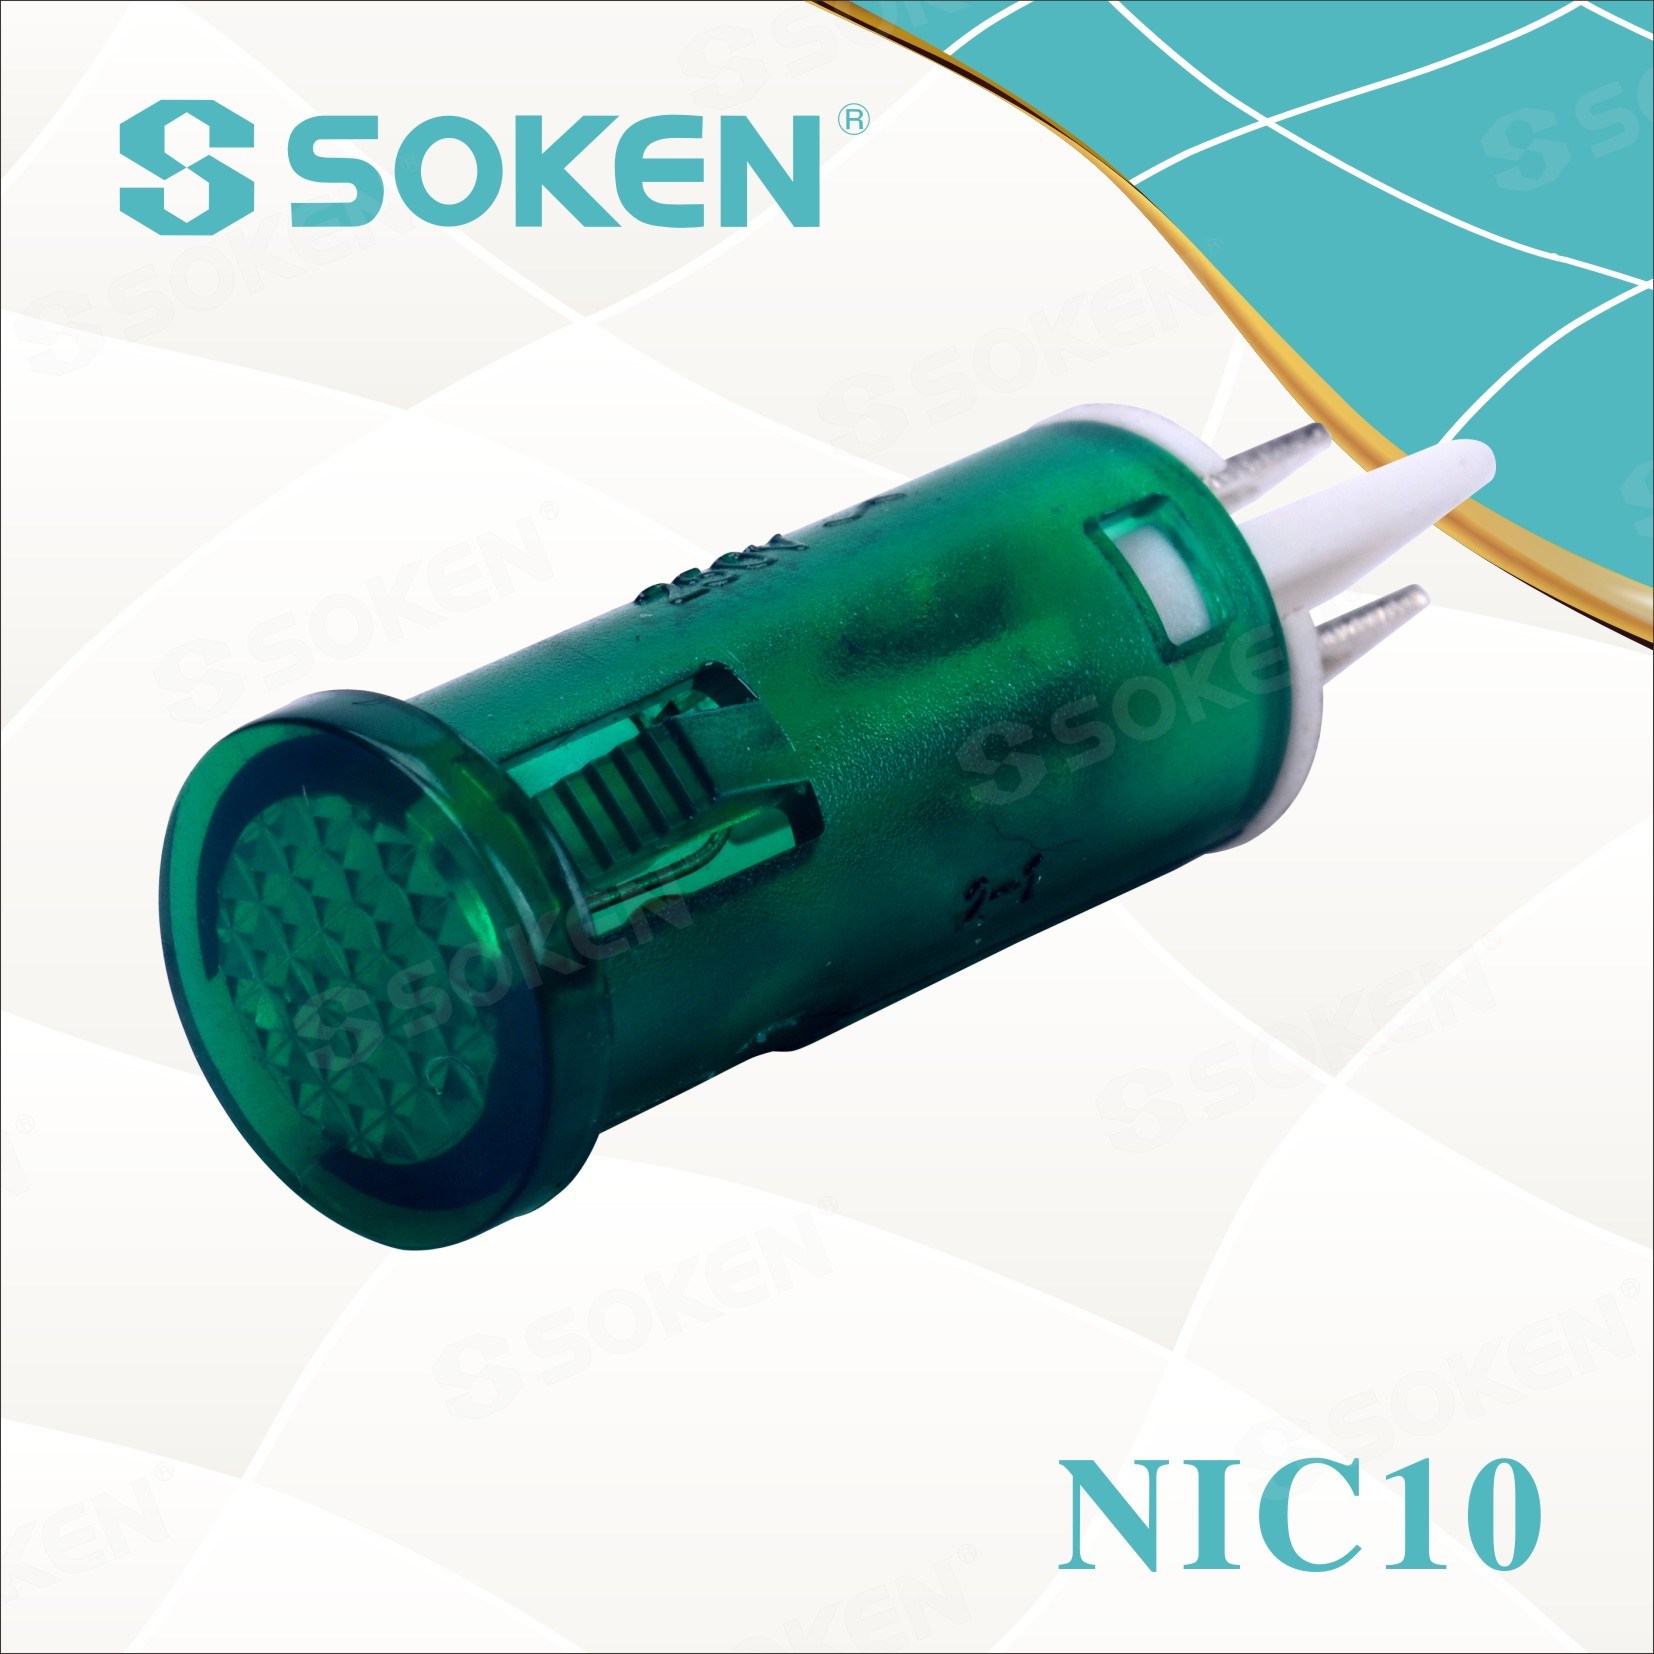 Voyant lumineux Soken Nic10 avec lampe au néon